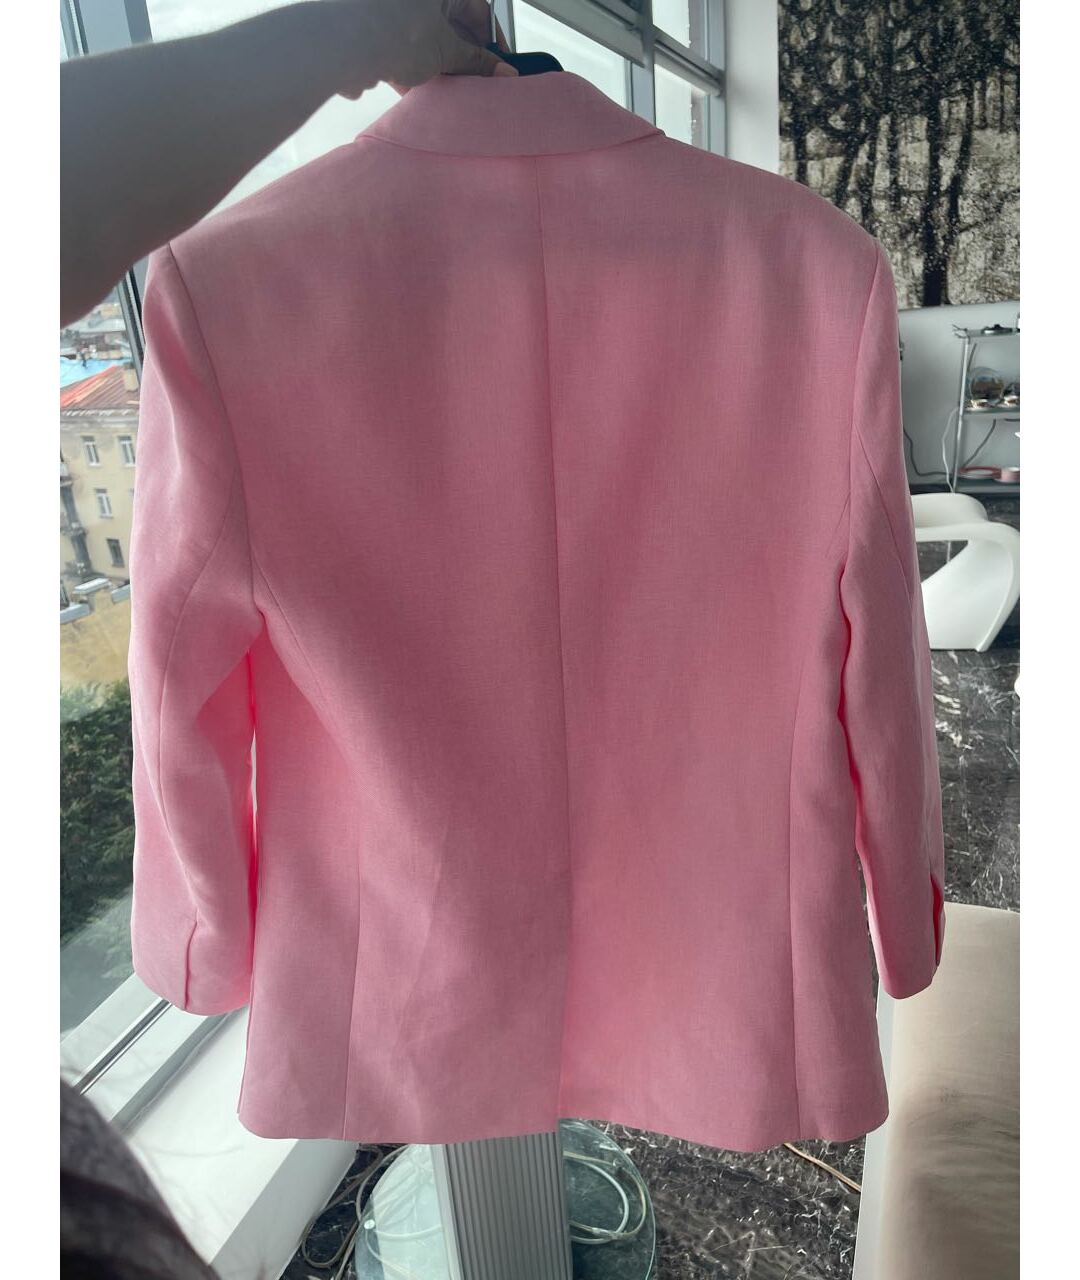 JACQUEMUS Розовый льняной жакет/пиджак, фото 3